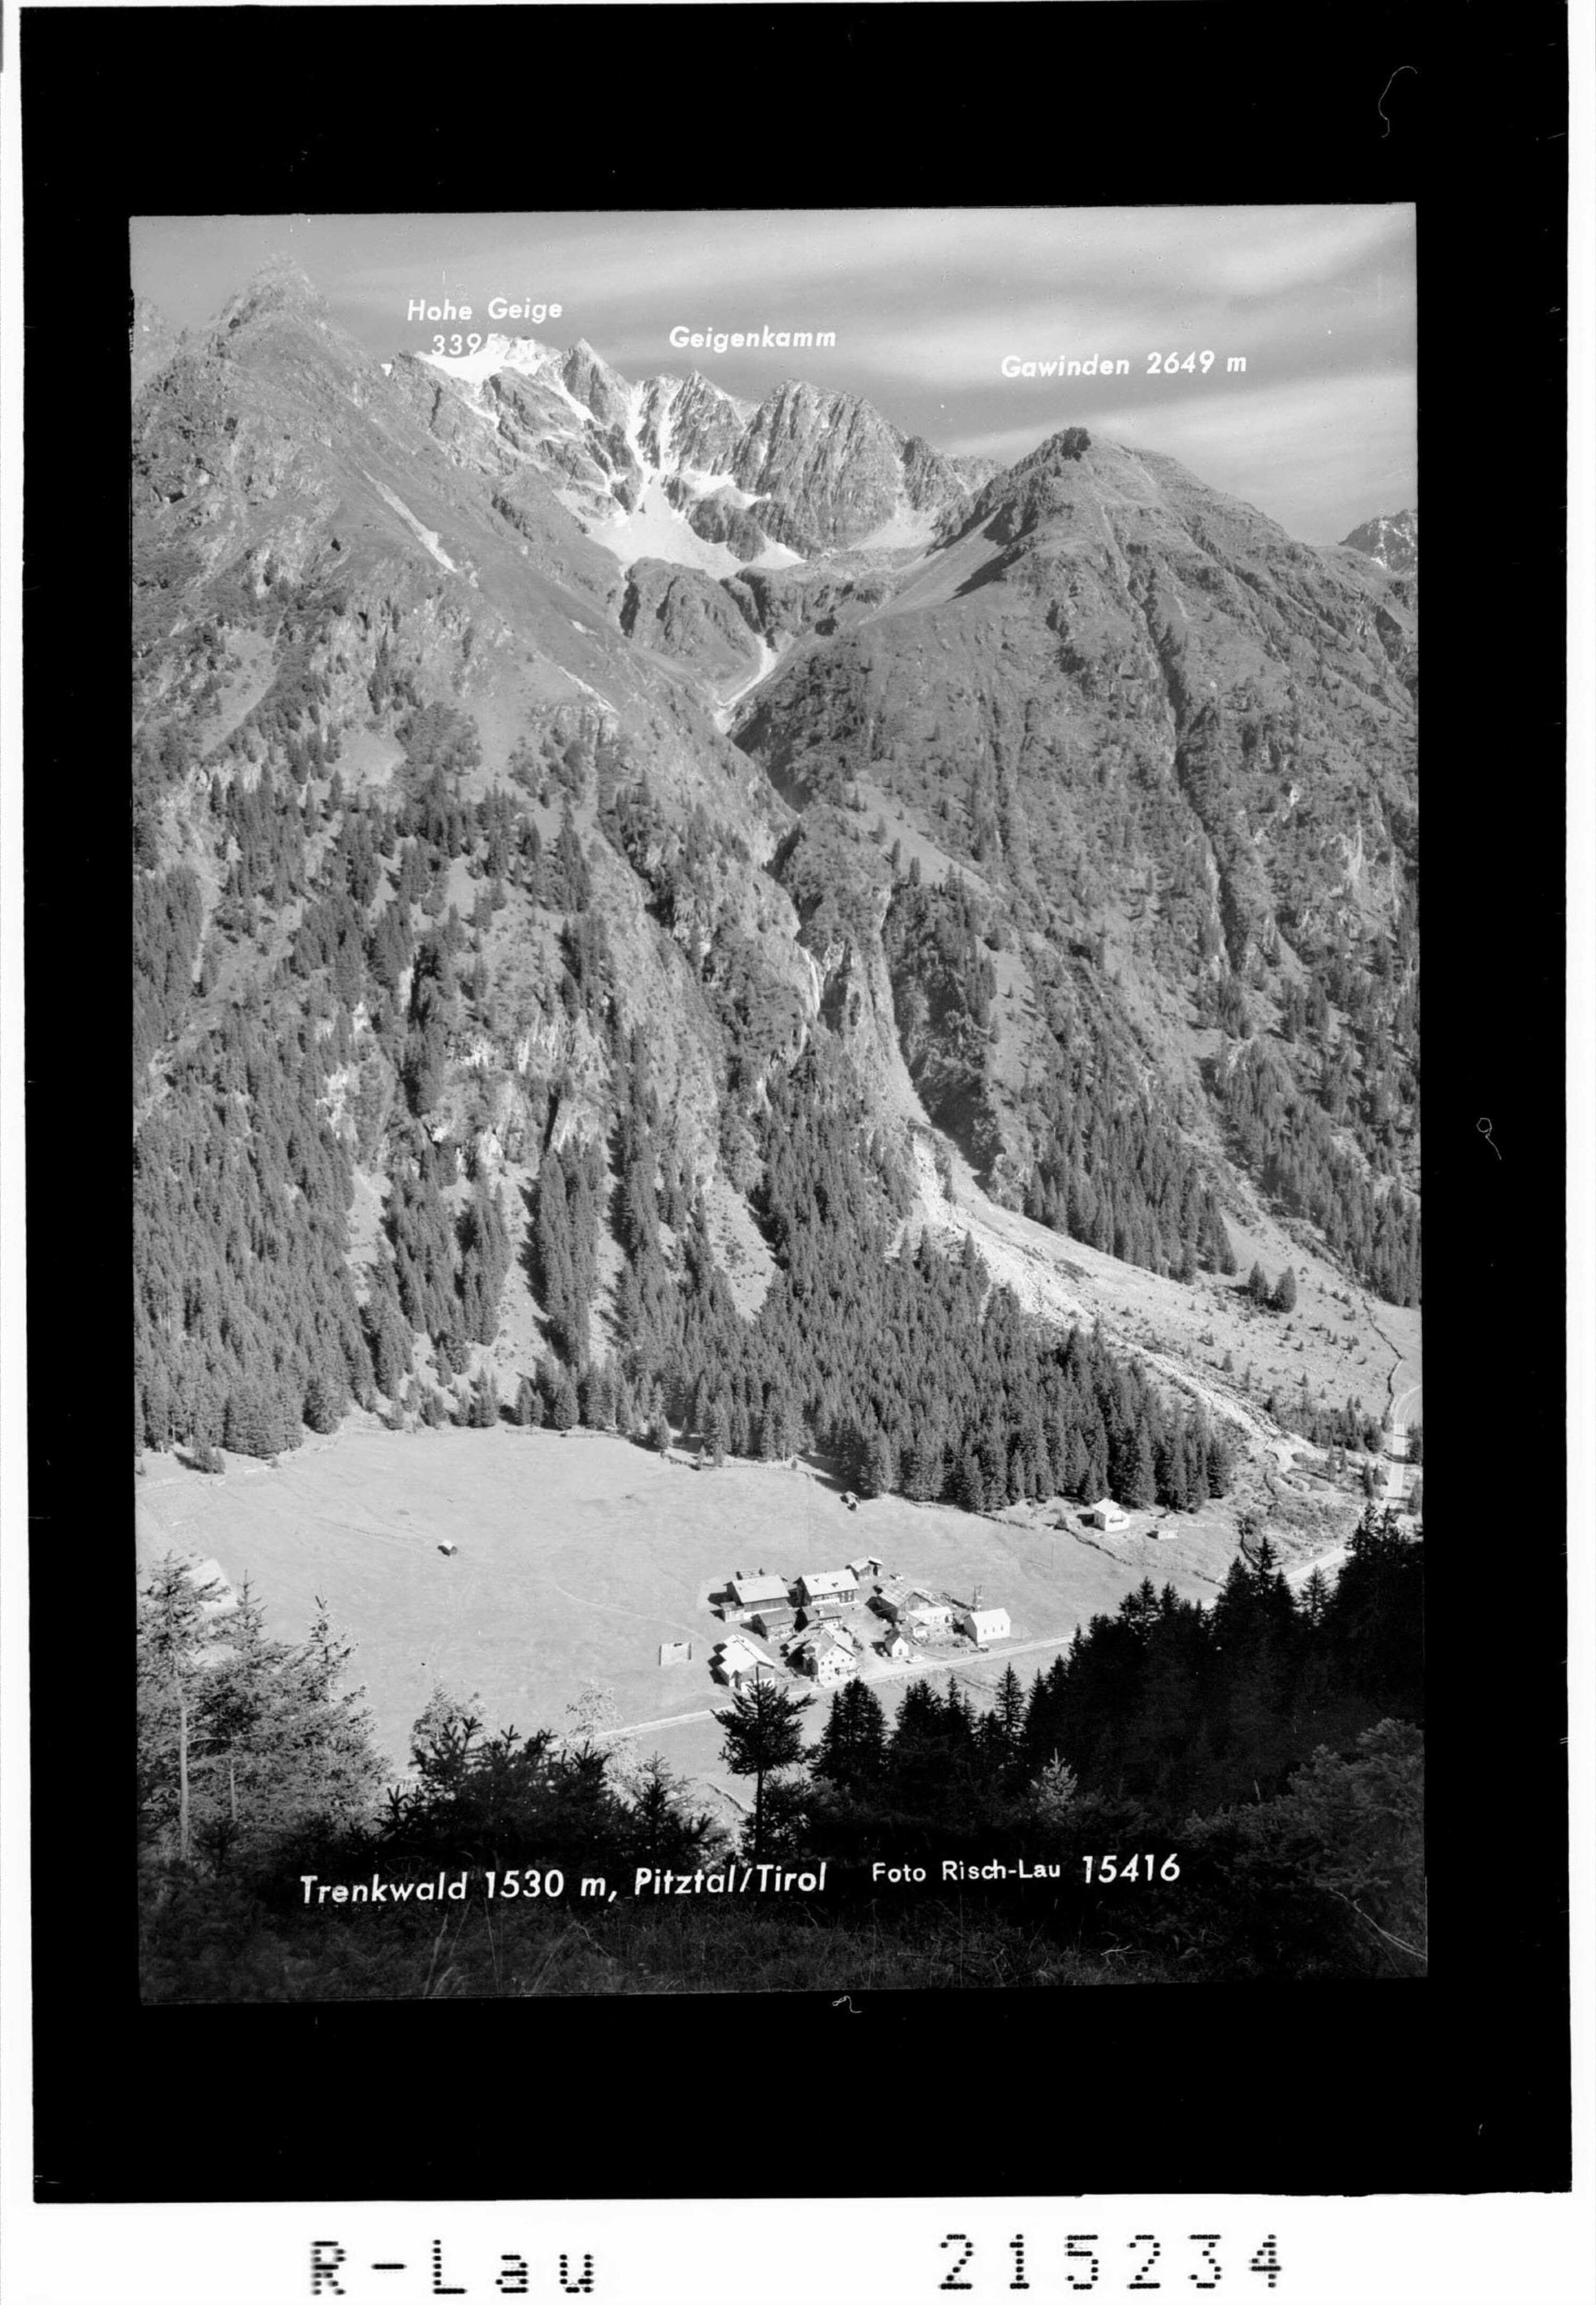 Trenkwald 1530 m, Pitztal / Tirol></div>


    <hr>
    <div class=